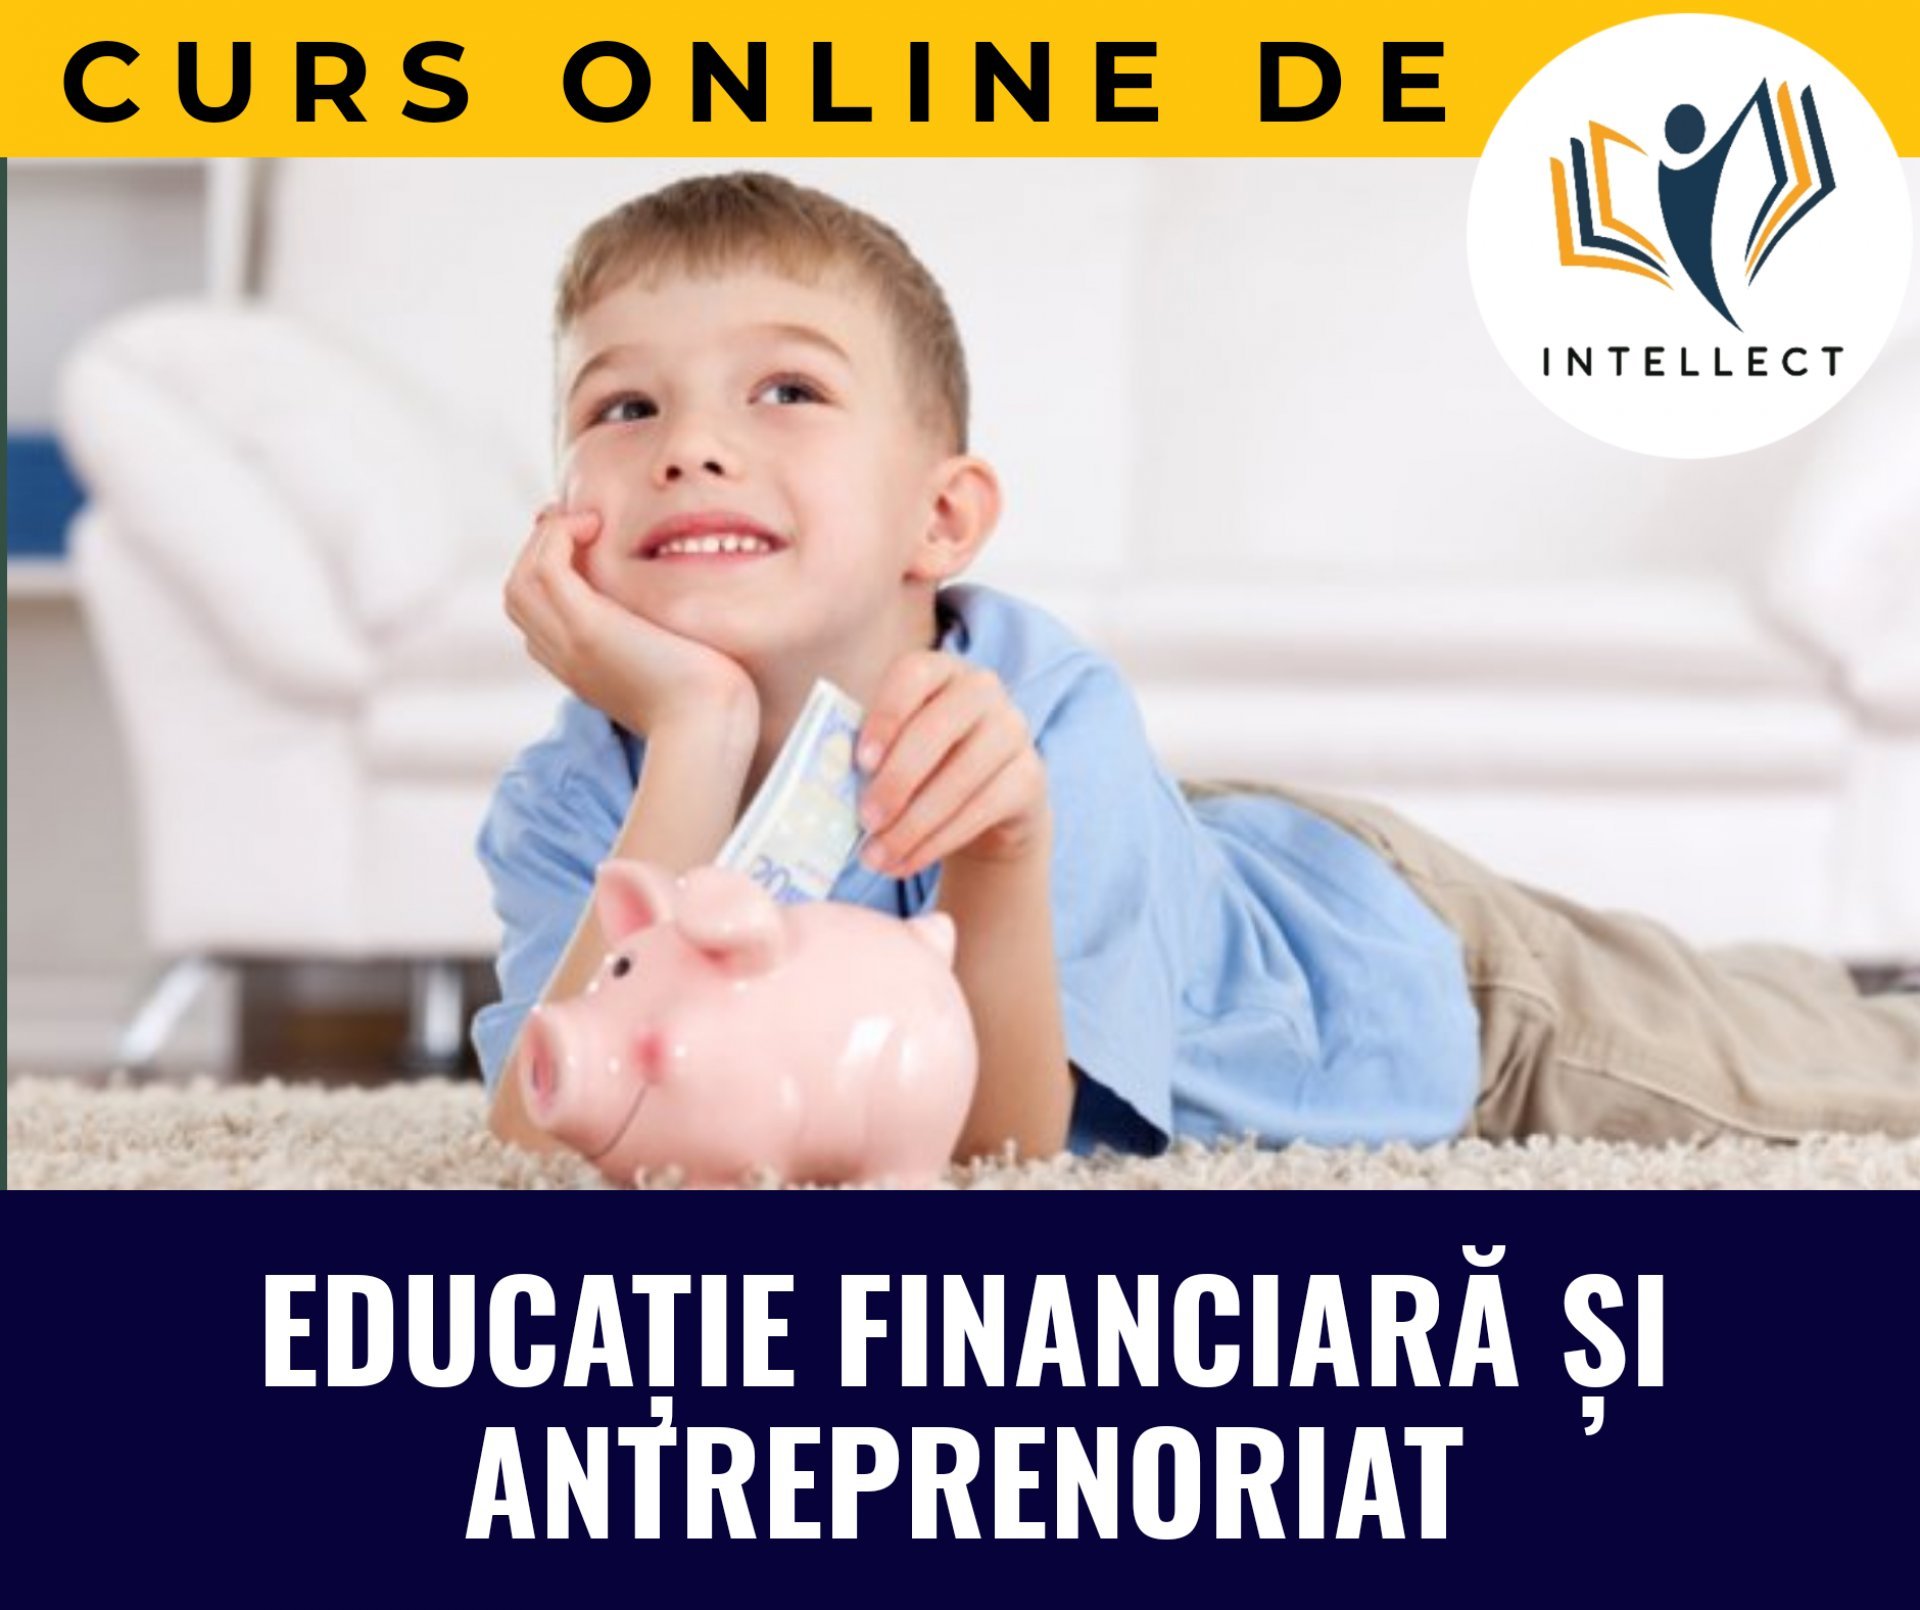 Educația financiară – educația utilă pentru întreaga viață a copilului și a adultului în devenire! Ianuarie 2021